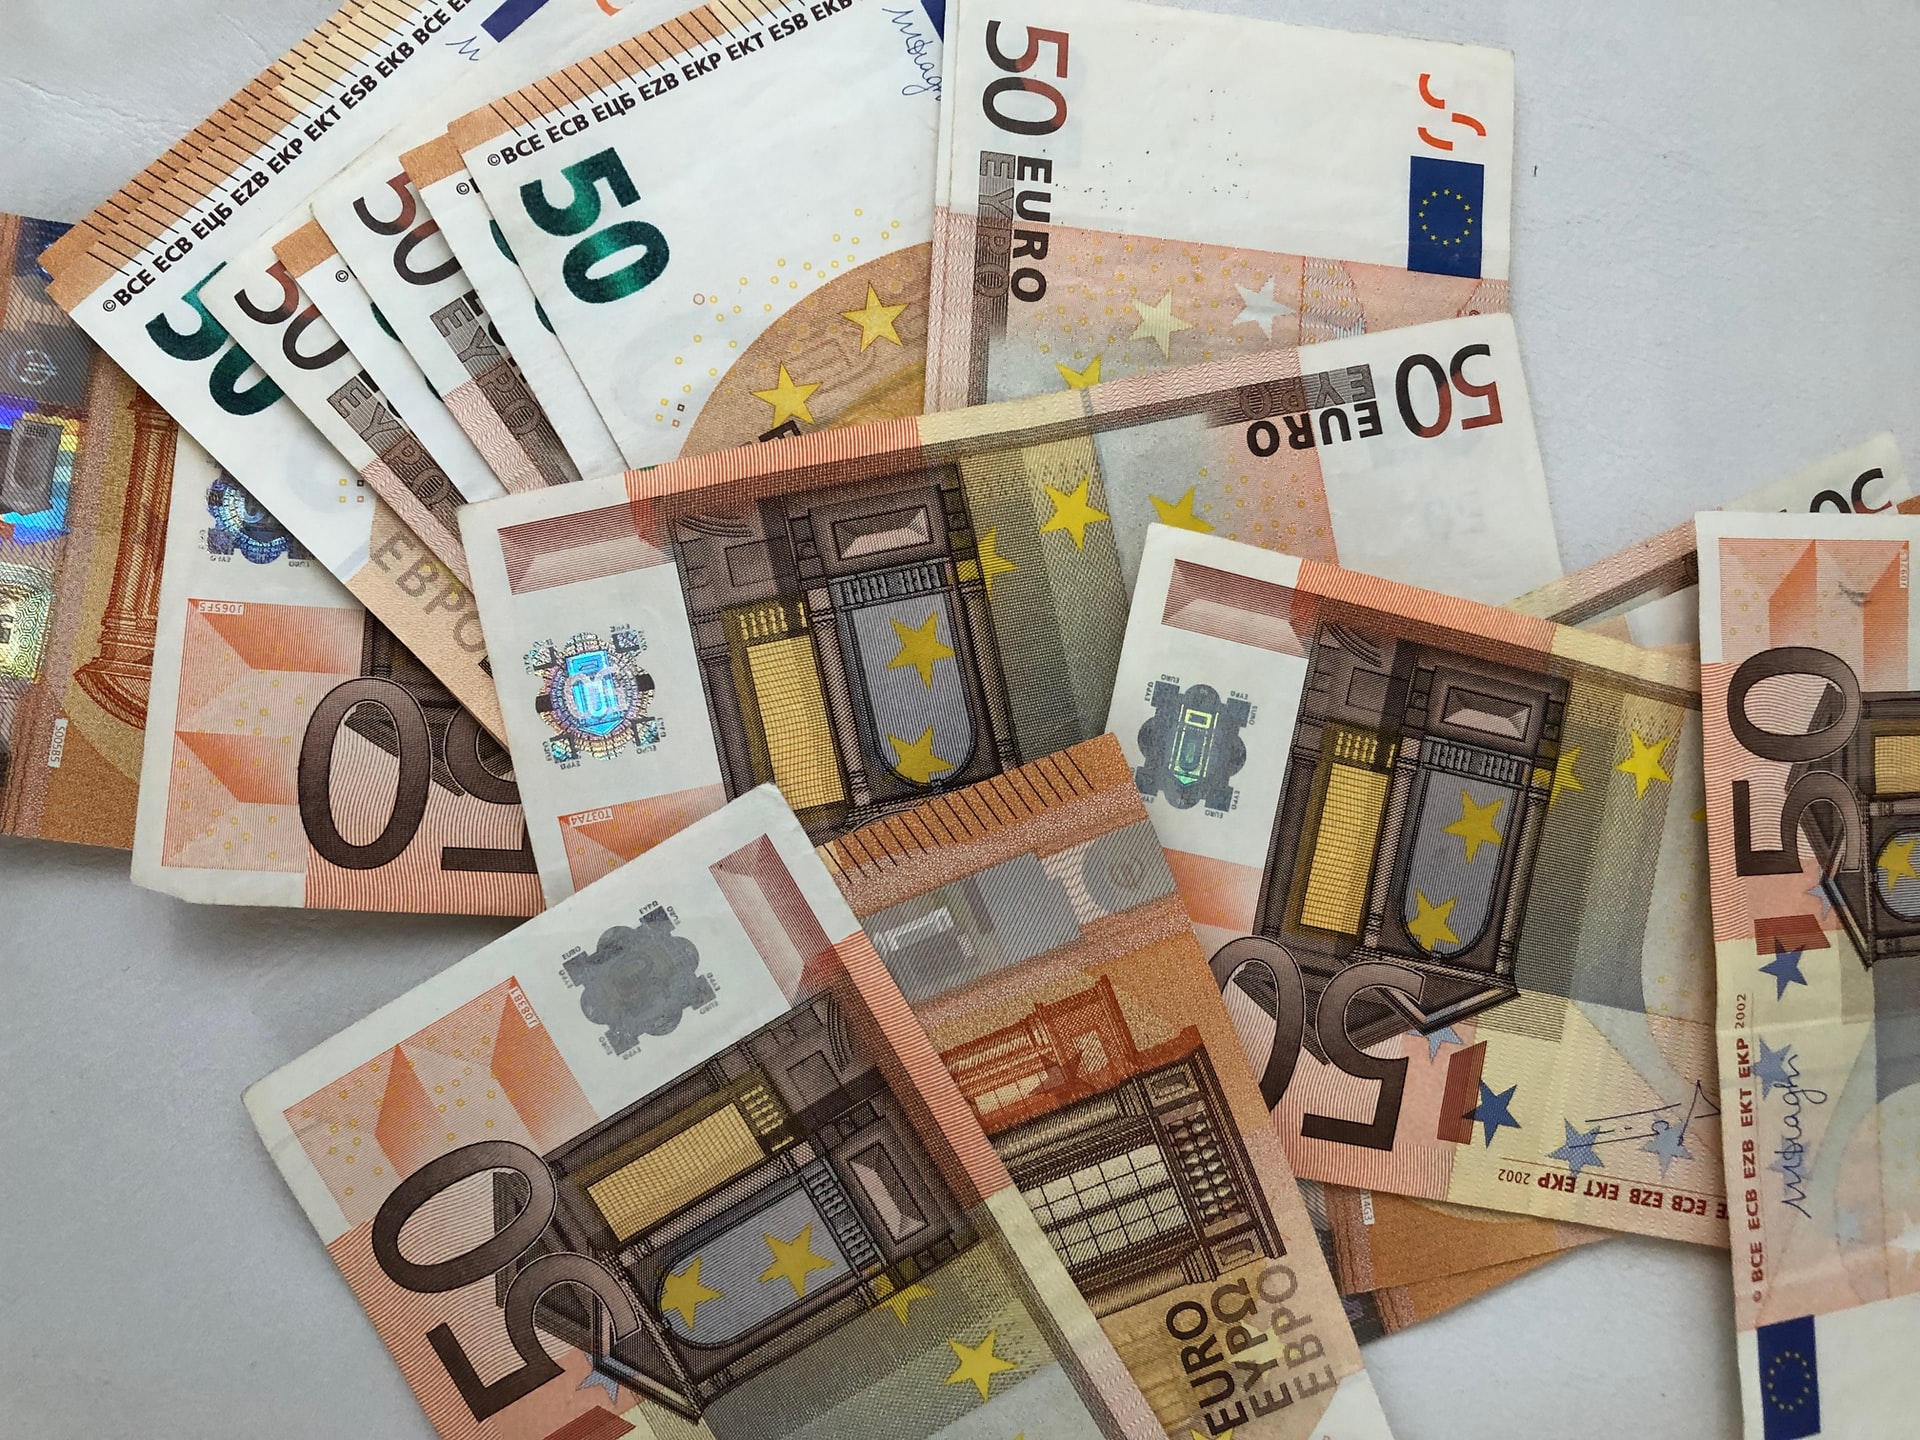 Πάτρα: 58χρονος βρήκε τσάντα με 3 εκατομμύρια ευρώ και την παρέδωσε